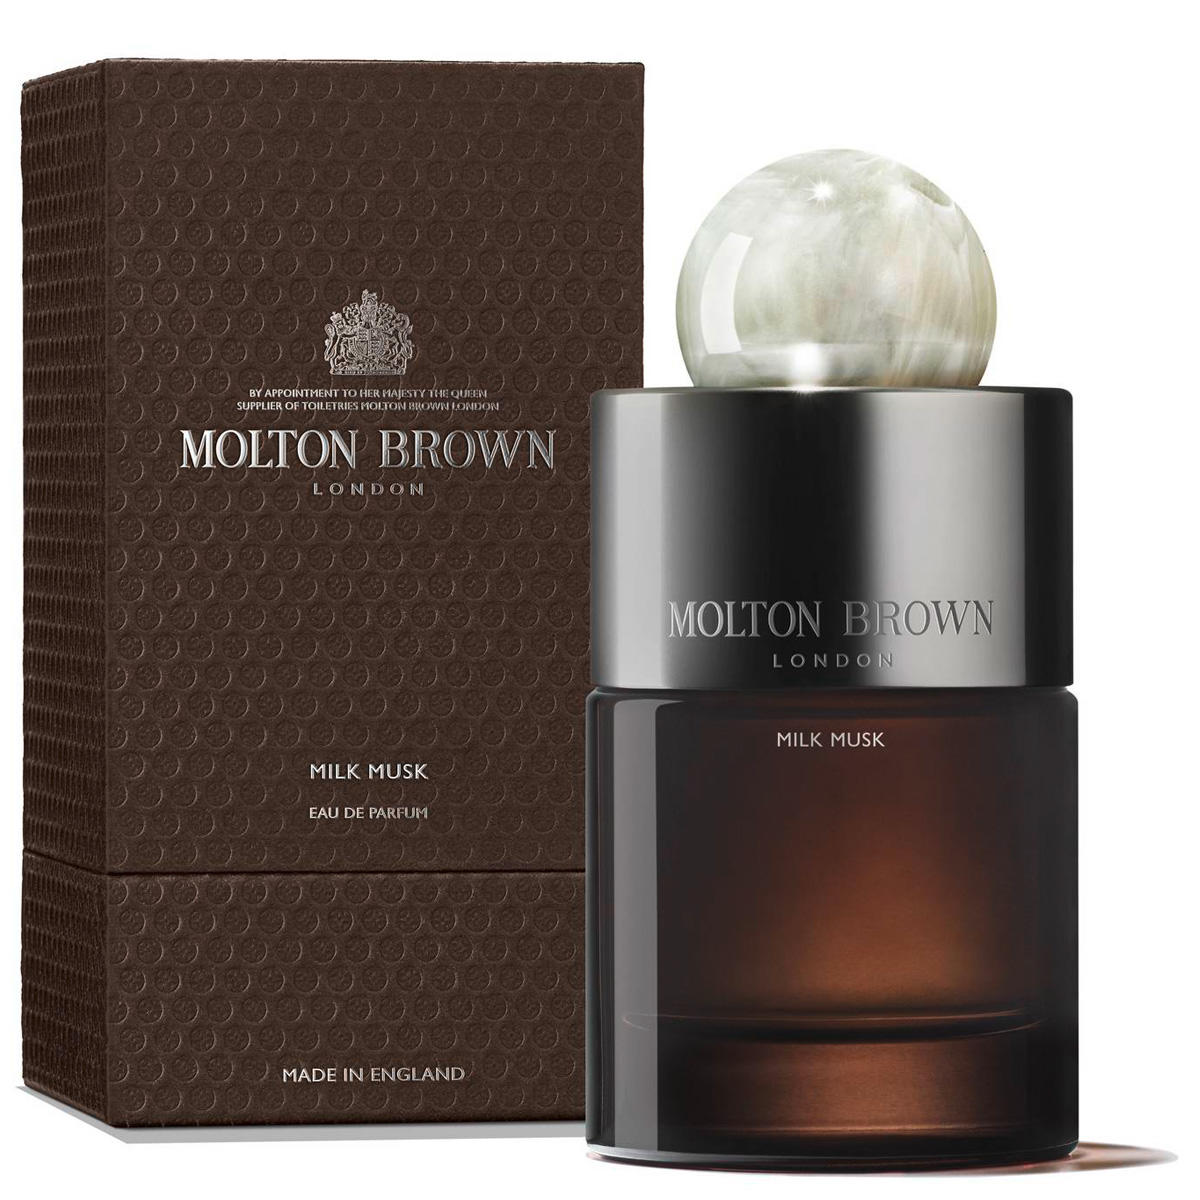 MOLTON BROWN Milk Musk Eau de Parfum 100 ml - 3